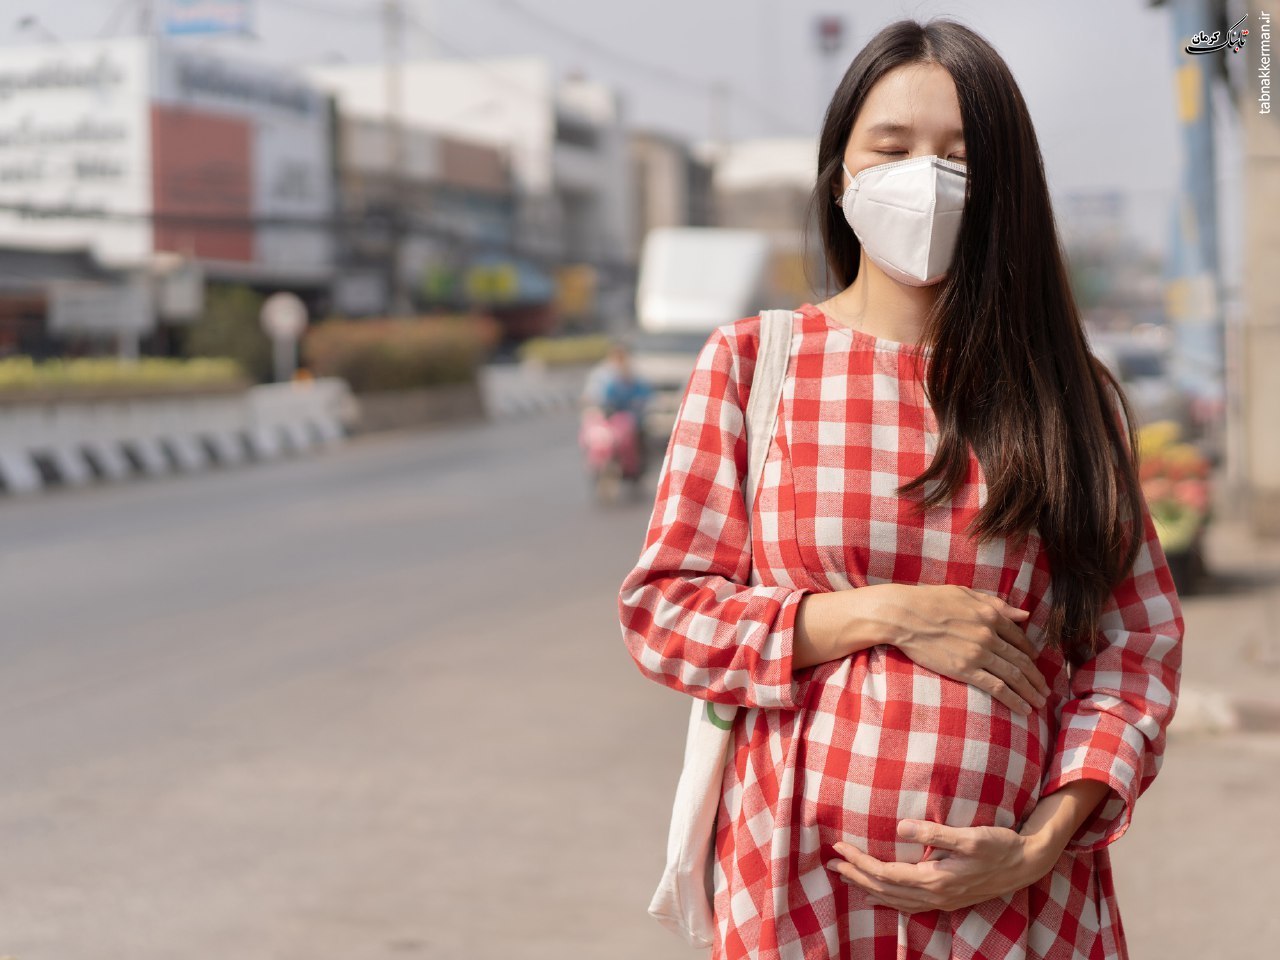 آیا افزایش آلودگی ها و یا مواجهه با گرما ناشی از تغییرات آب و هوا با عوارض حاملگی مانند تولد نوزاد زودرس، وزن کم هنگام تولد و مرده زایی مرتبط است؟